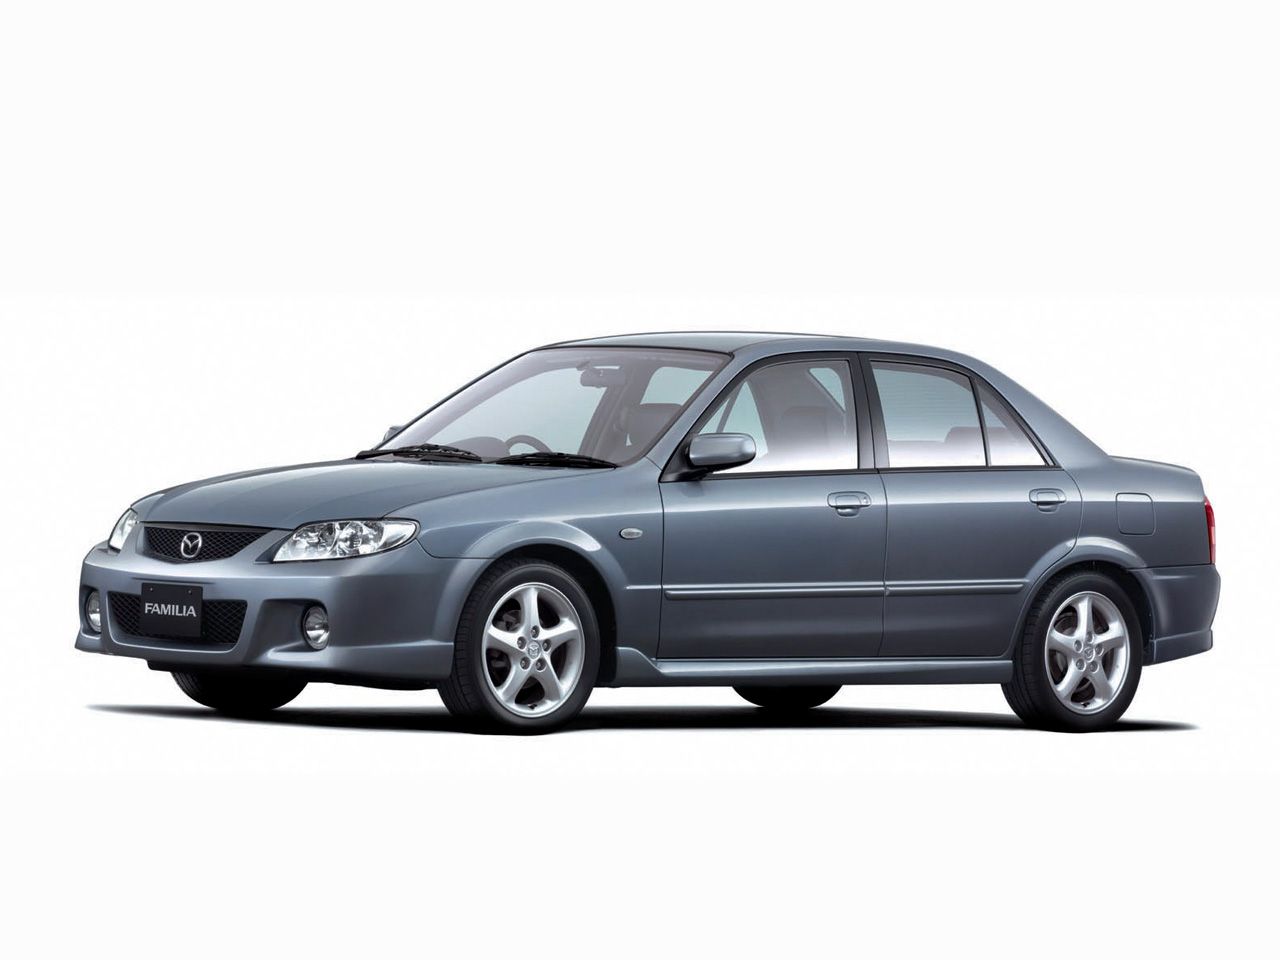 Mazda bj5p. Mazda familia, 2000 - 2003 седан. Мазда фамилия 2003 седан. Mazda familia 1998. Mazda 323 familia.